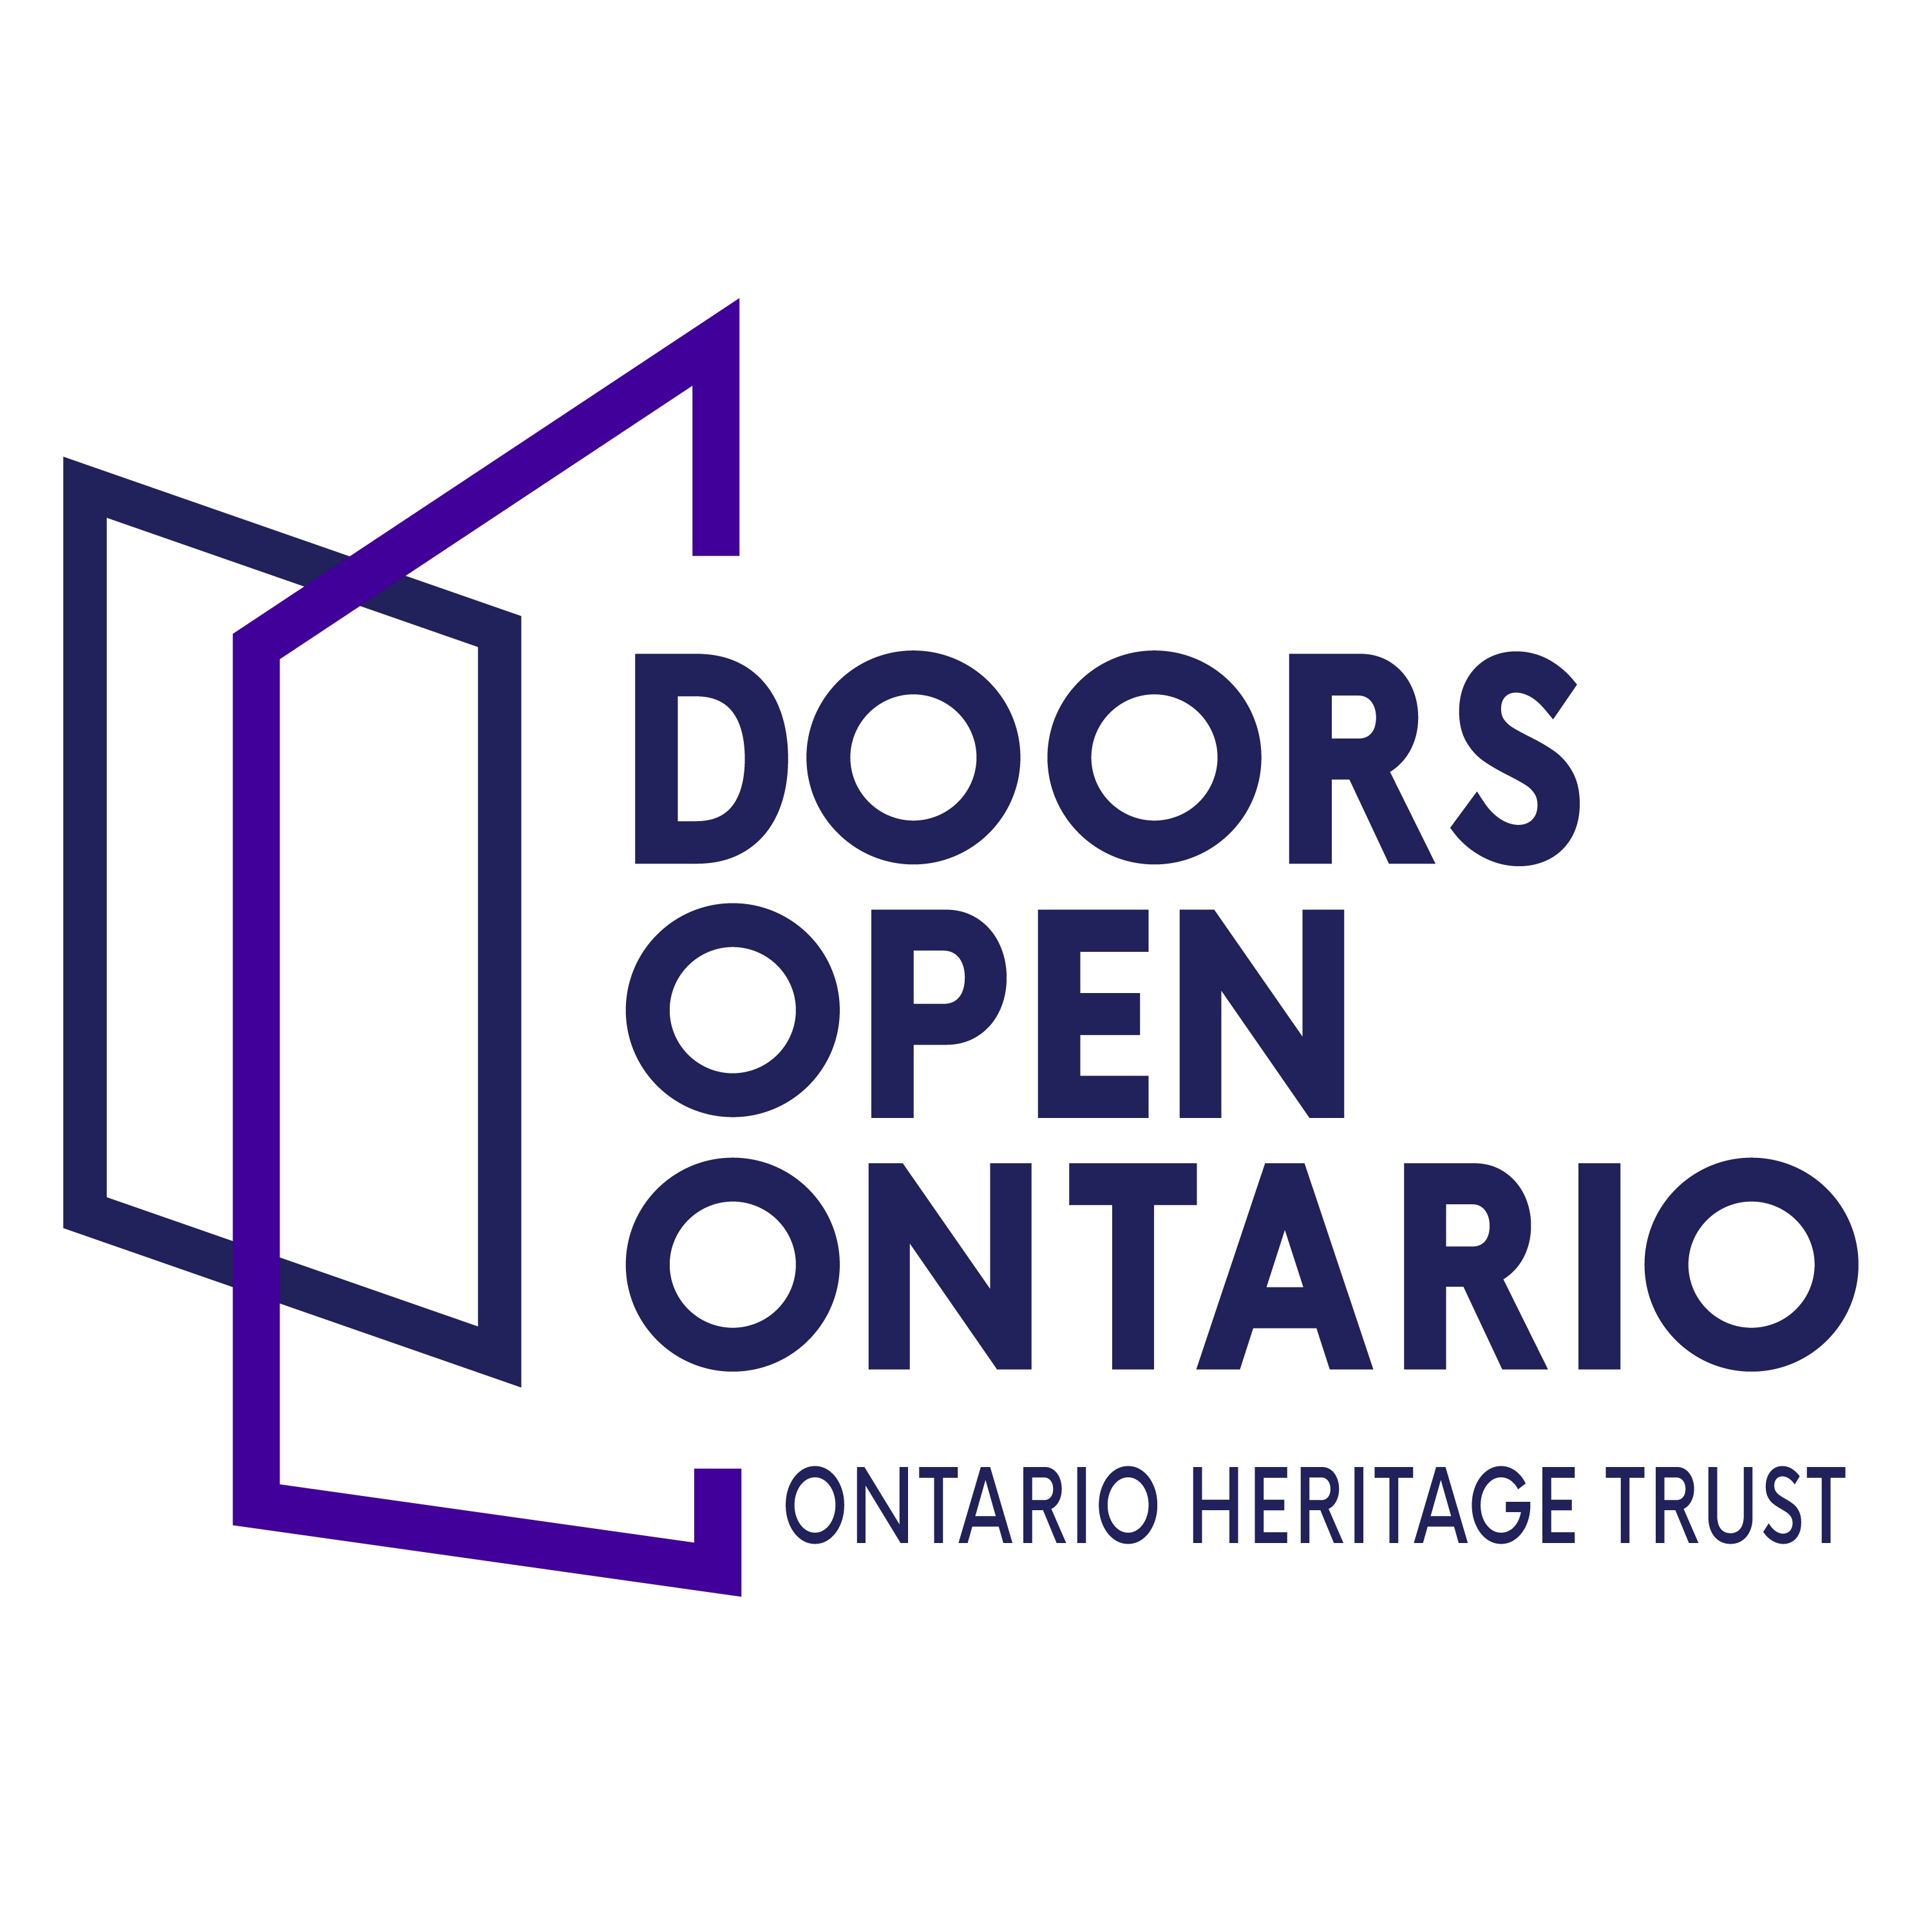 Doors Open Ontario wordmark